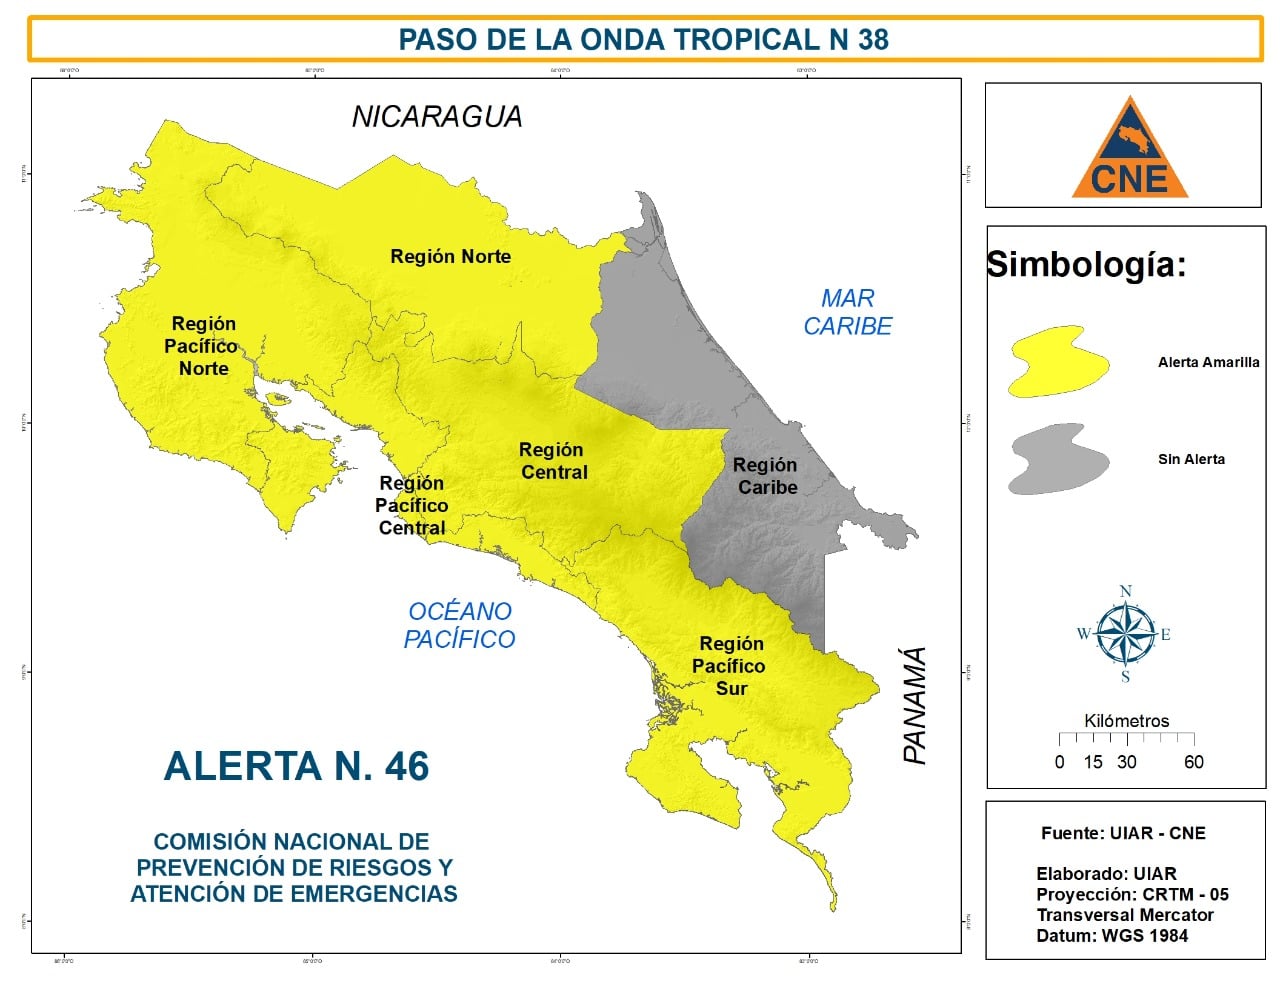 CNE eleva alertas en Costa Rica por el paso de la onda tropical #38